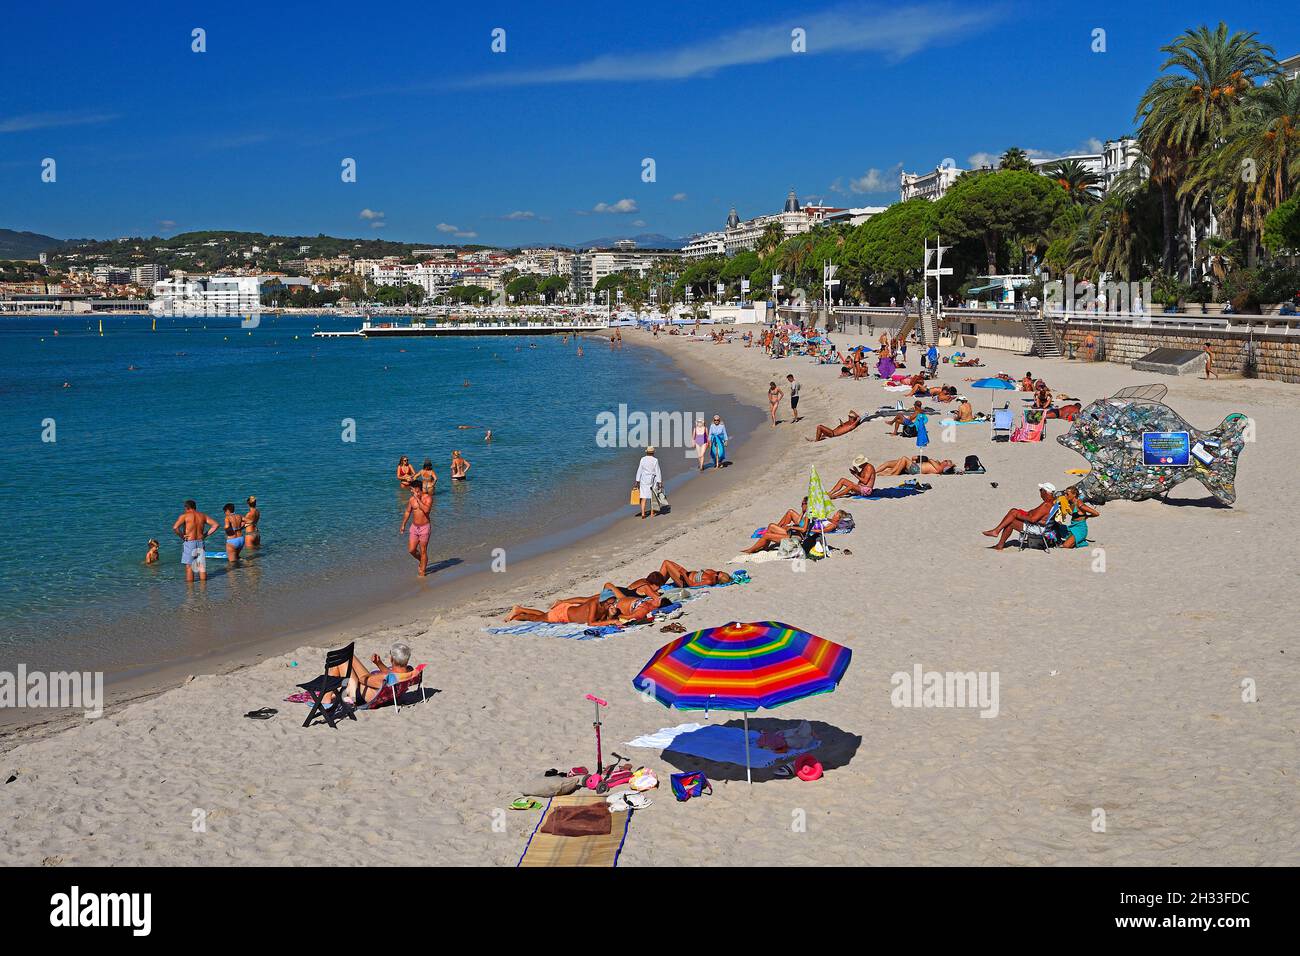 Strand und Bucht von Cannes, Côte d’Azur, Provence-Alpes-Côte d’Azur, Südfrankreich, Frankreich Banque D'Images